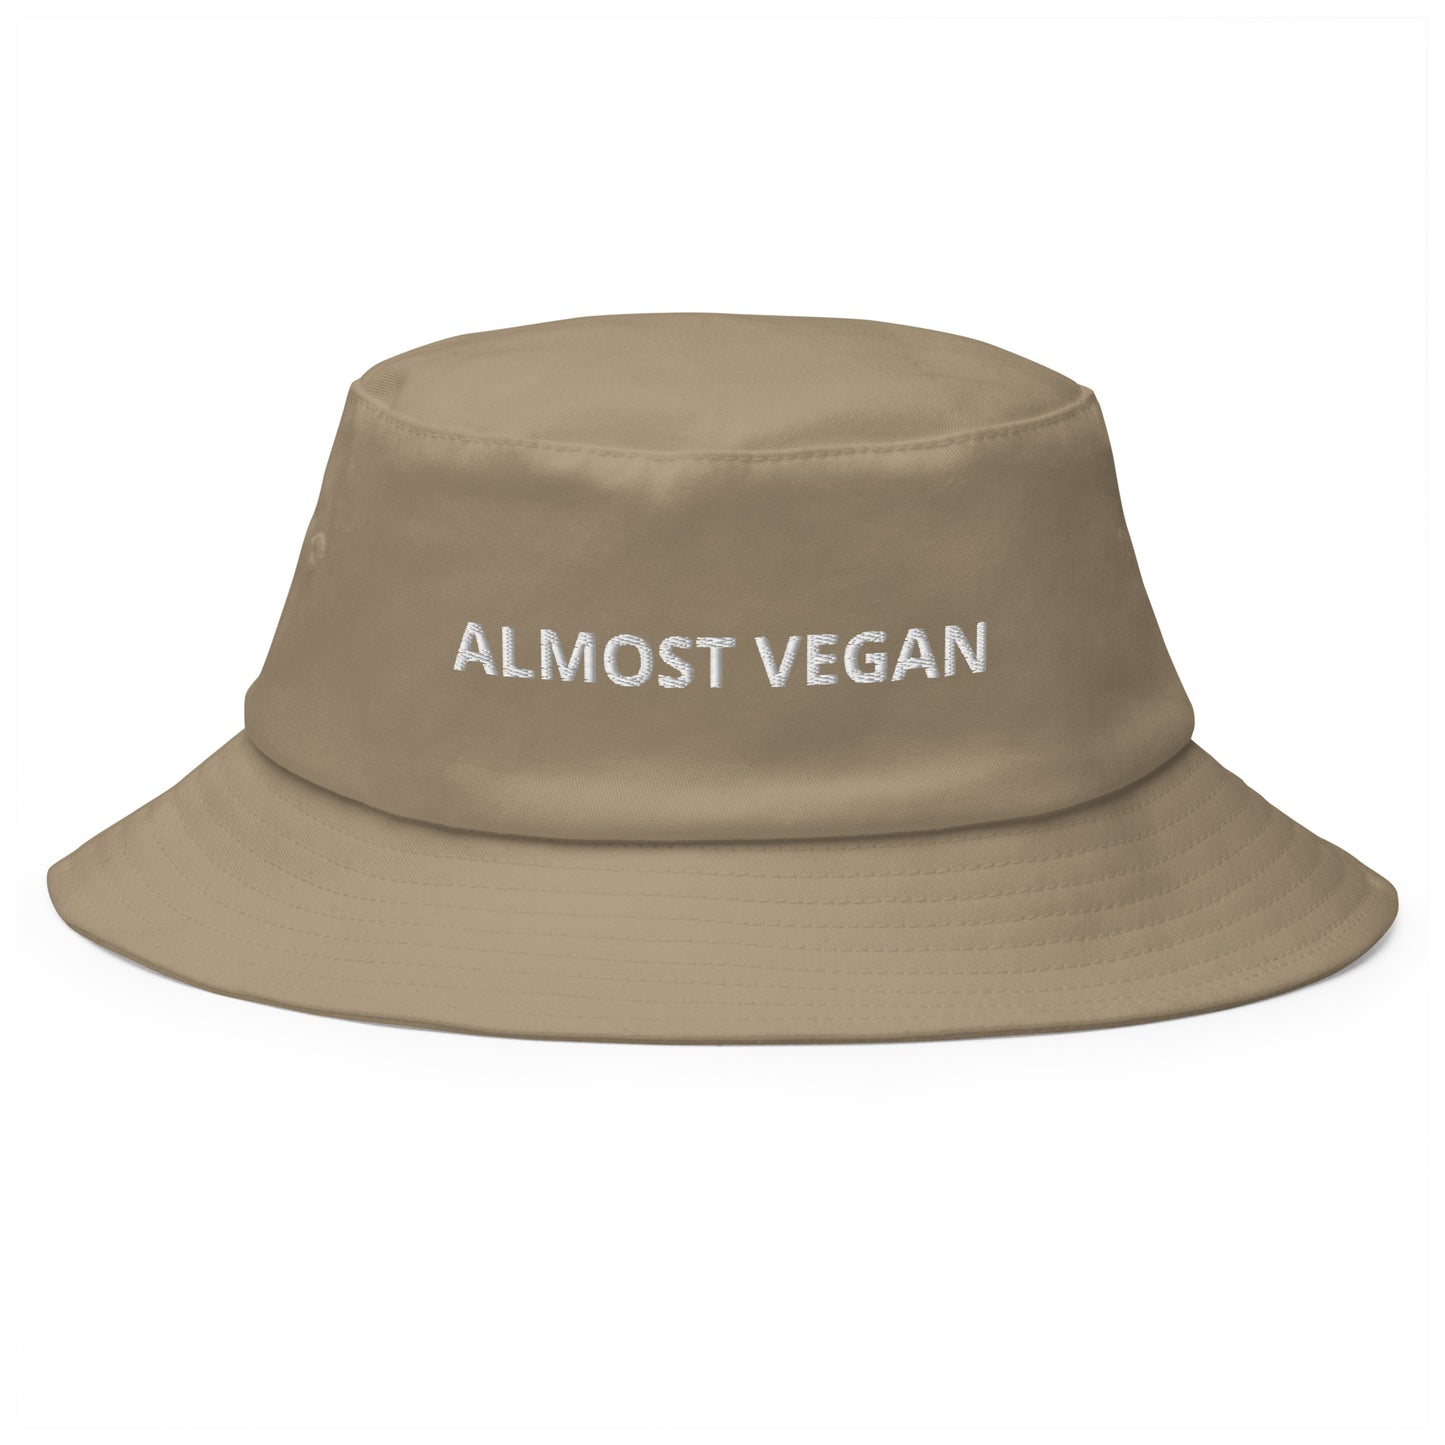 Produktbild des bestickten Fischerhuts 'ALMOST VEGAN' auf einem weißen Hintergrund. Der Hut vermittelt mit seinem humorvollen Spruch und klassischen Fischerhut-Stil eine entspannte, fast vegane Lebenshaltung.